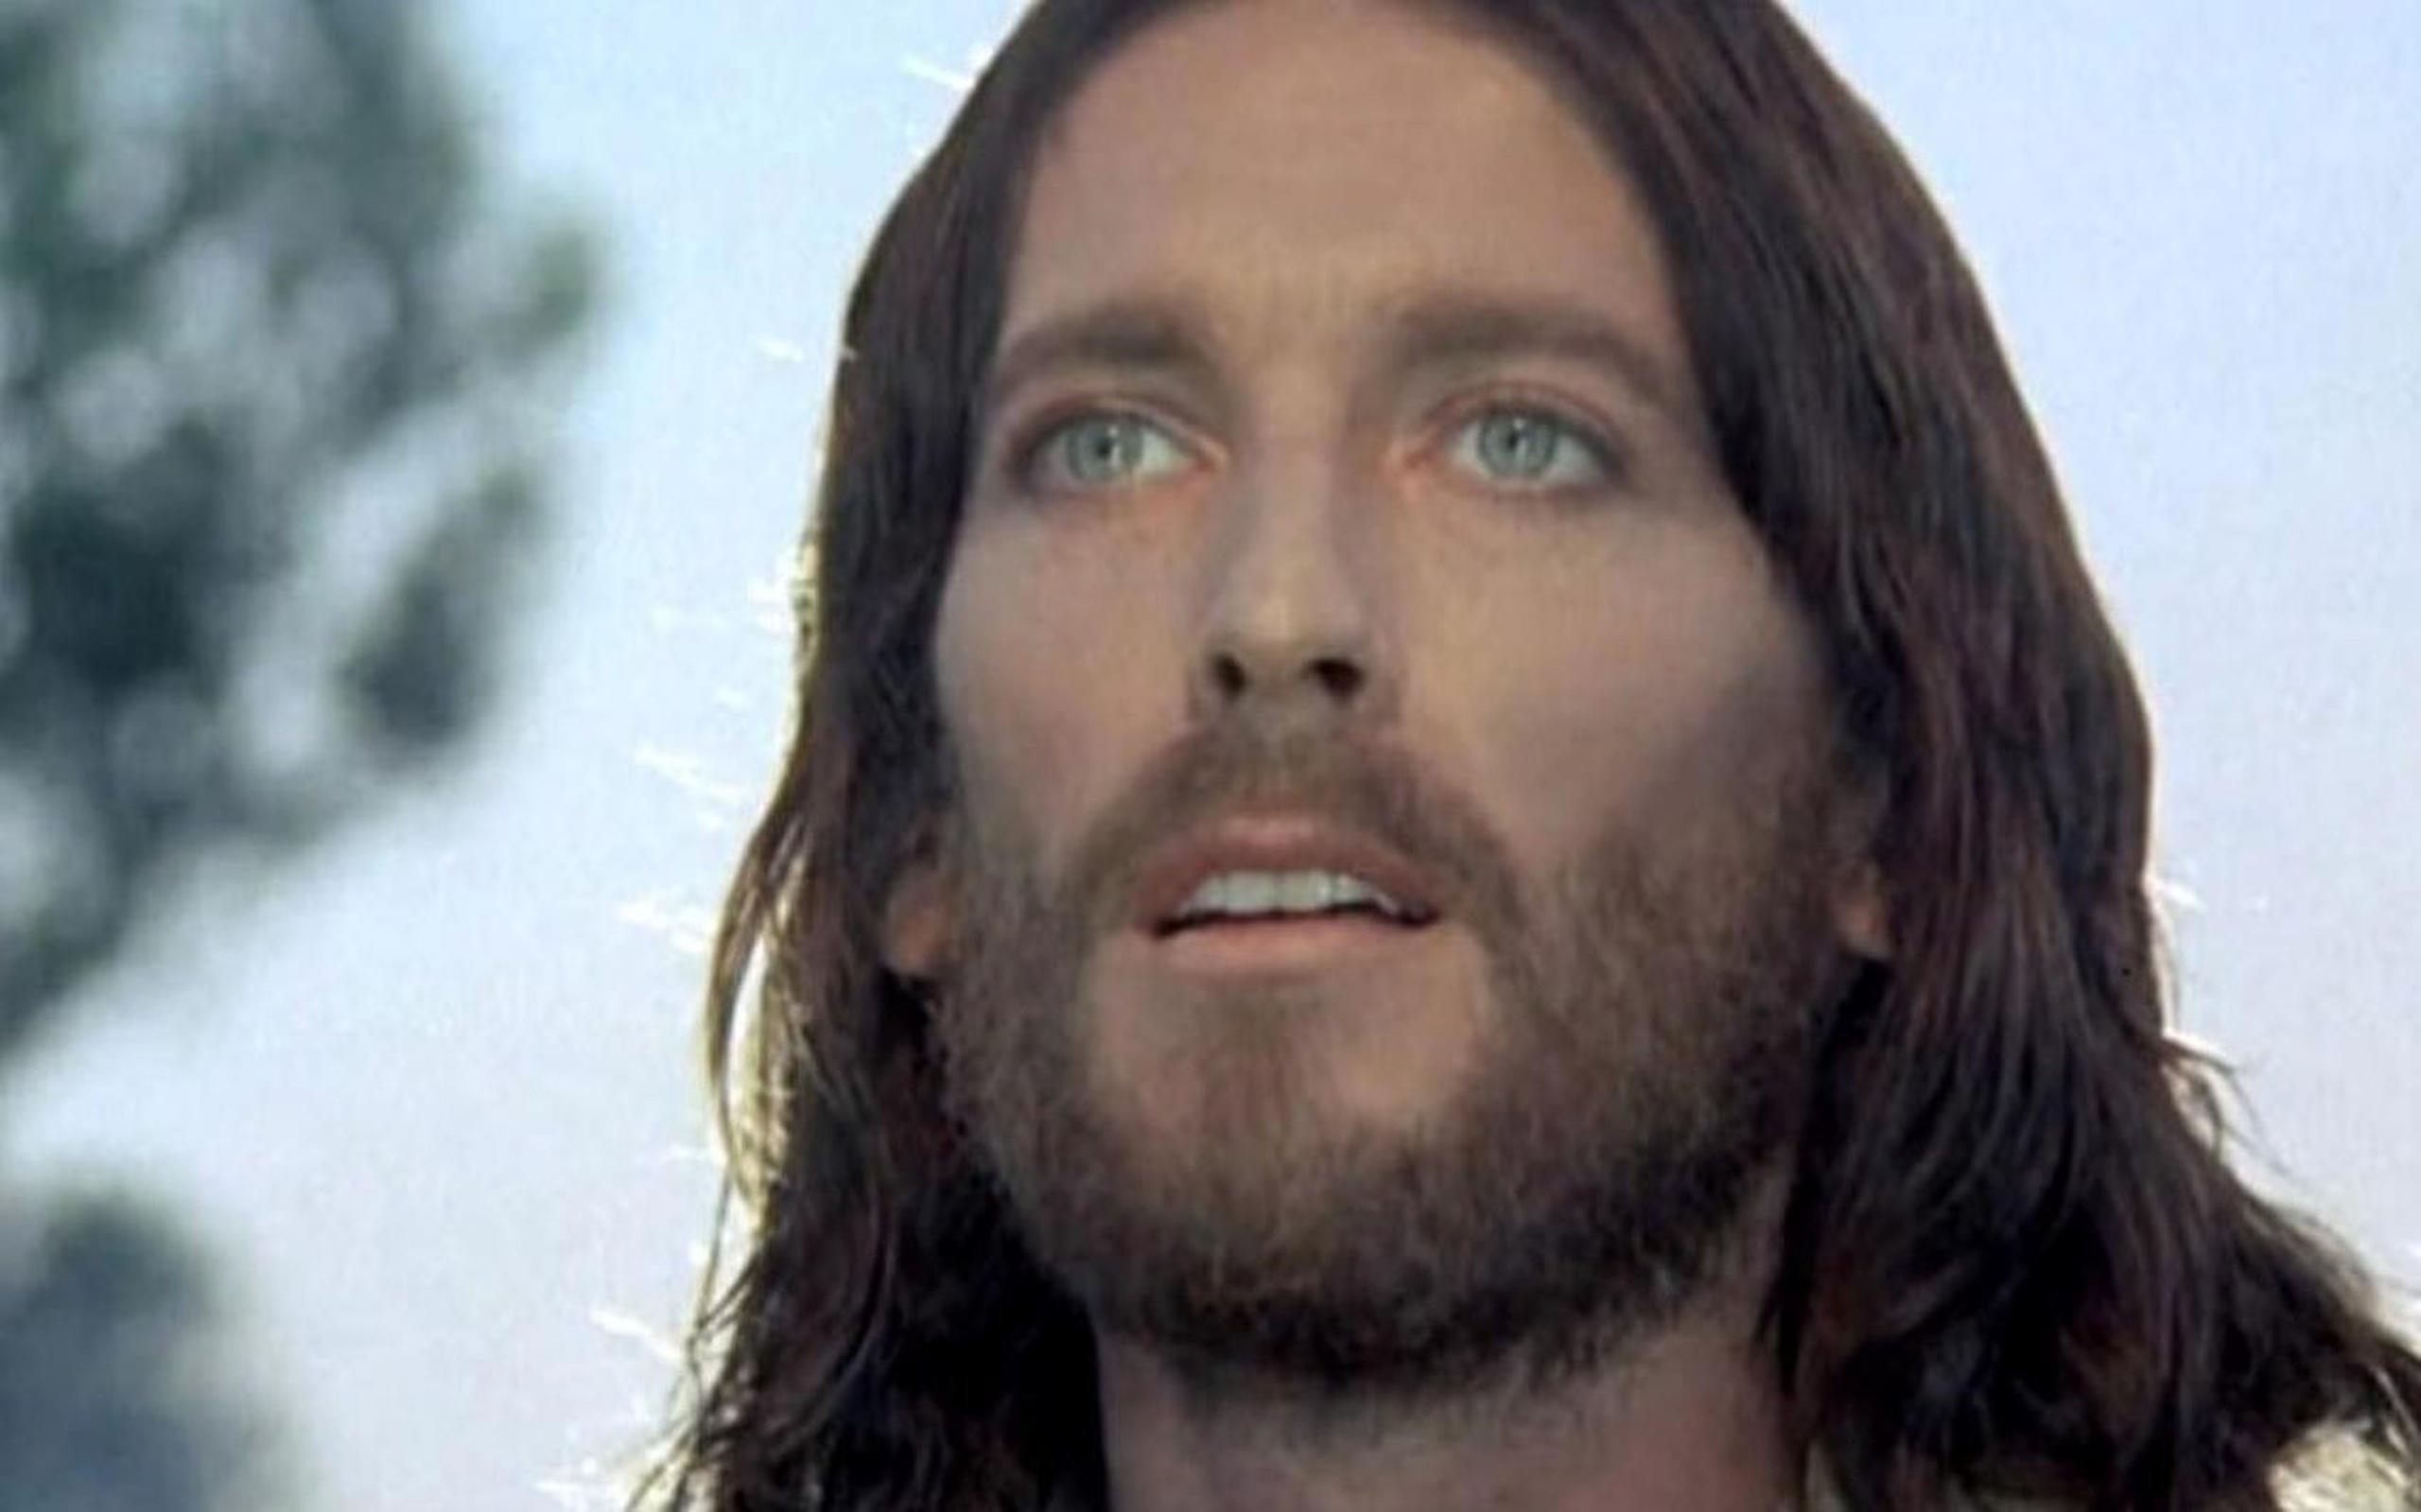 Tanto el cine como el arte religioso tradicionalmente conceptúan a Jesús como un hombre de piel blanca, ojos claros y cabello lacio, contrario a la imagen creada mediante inteligencia artificial.